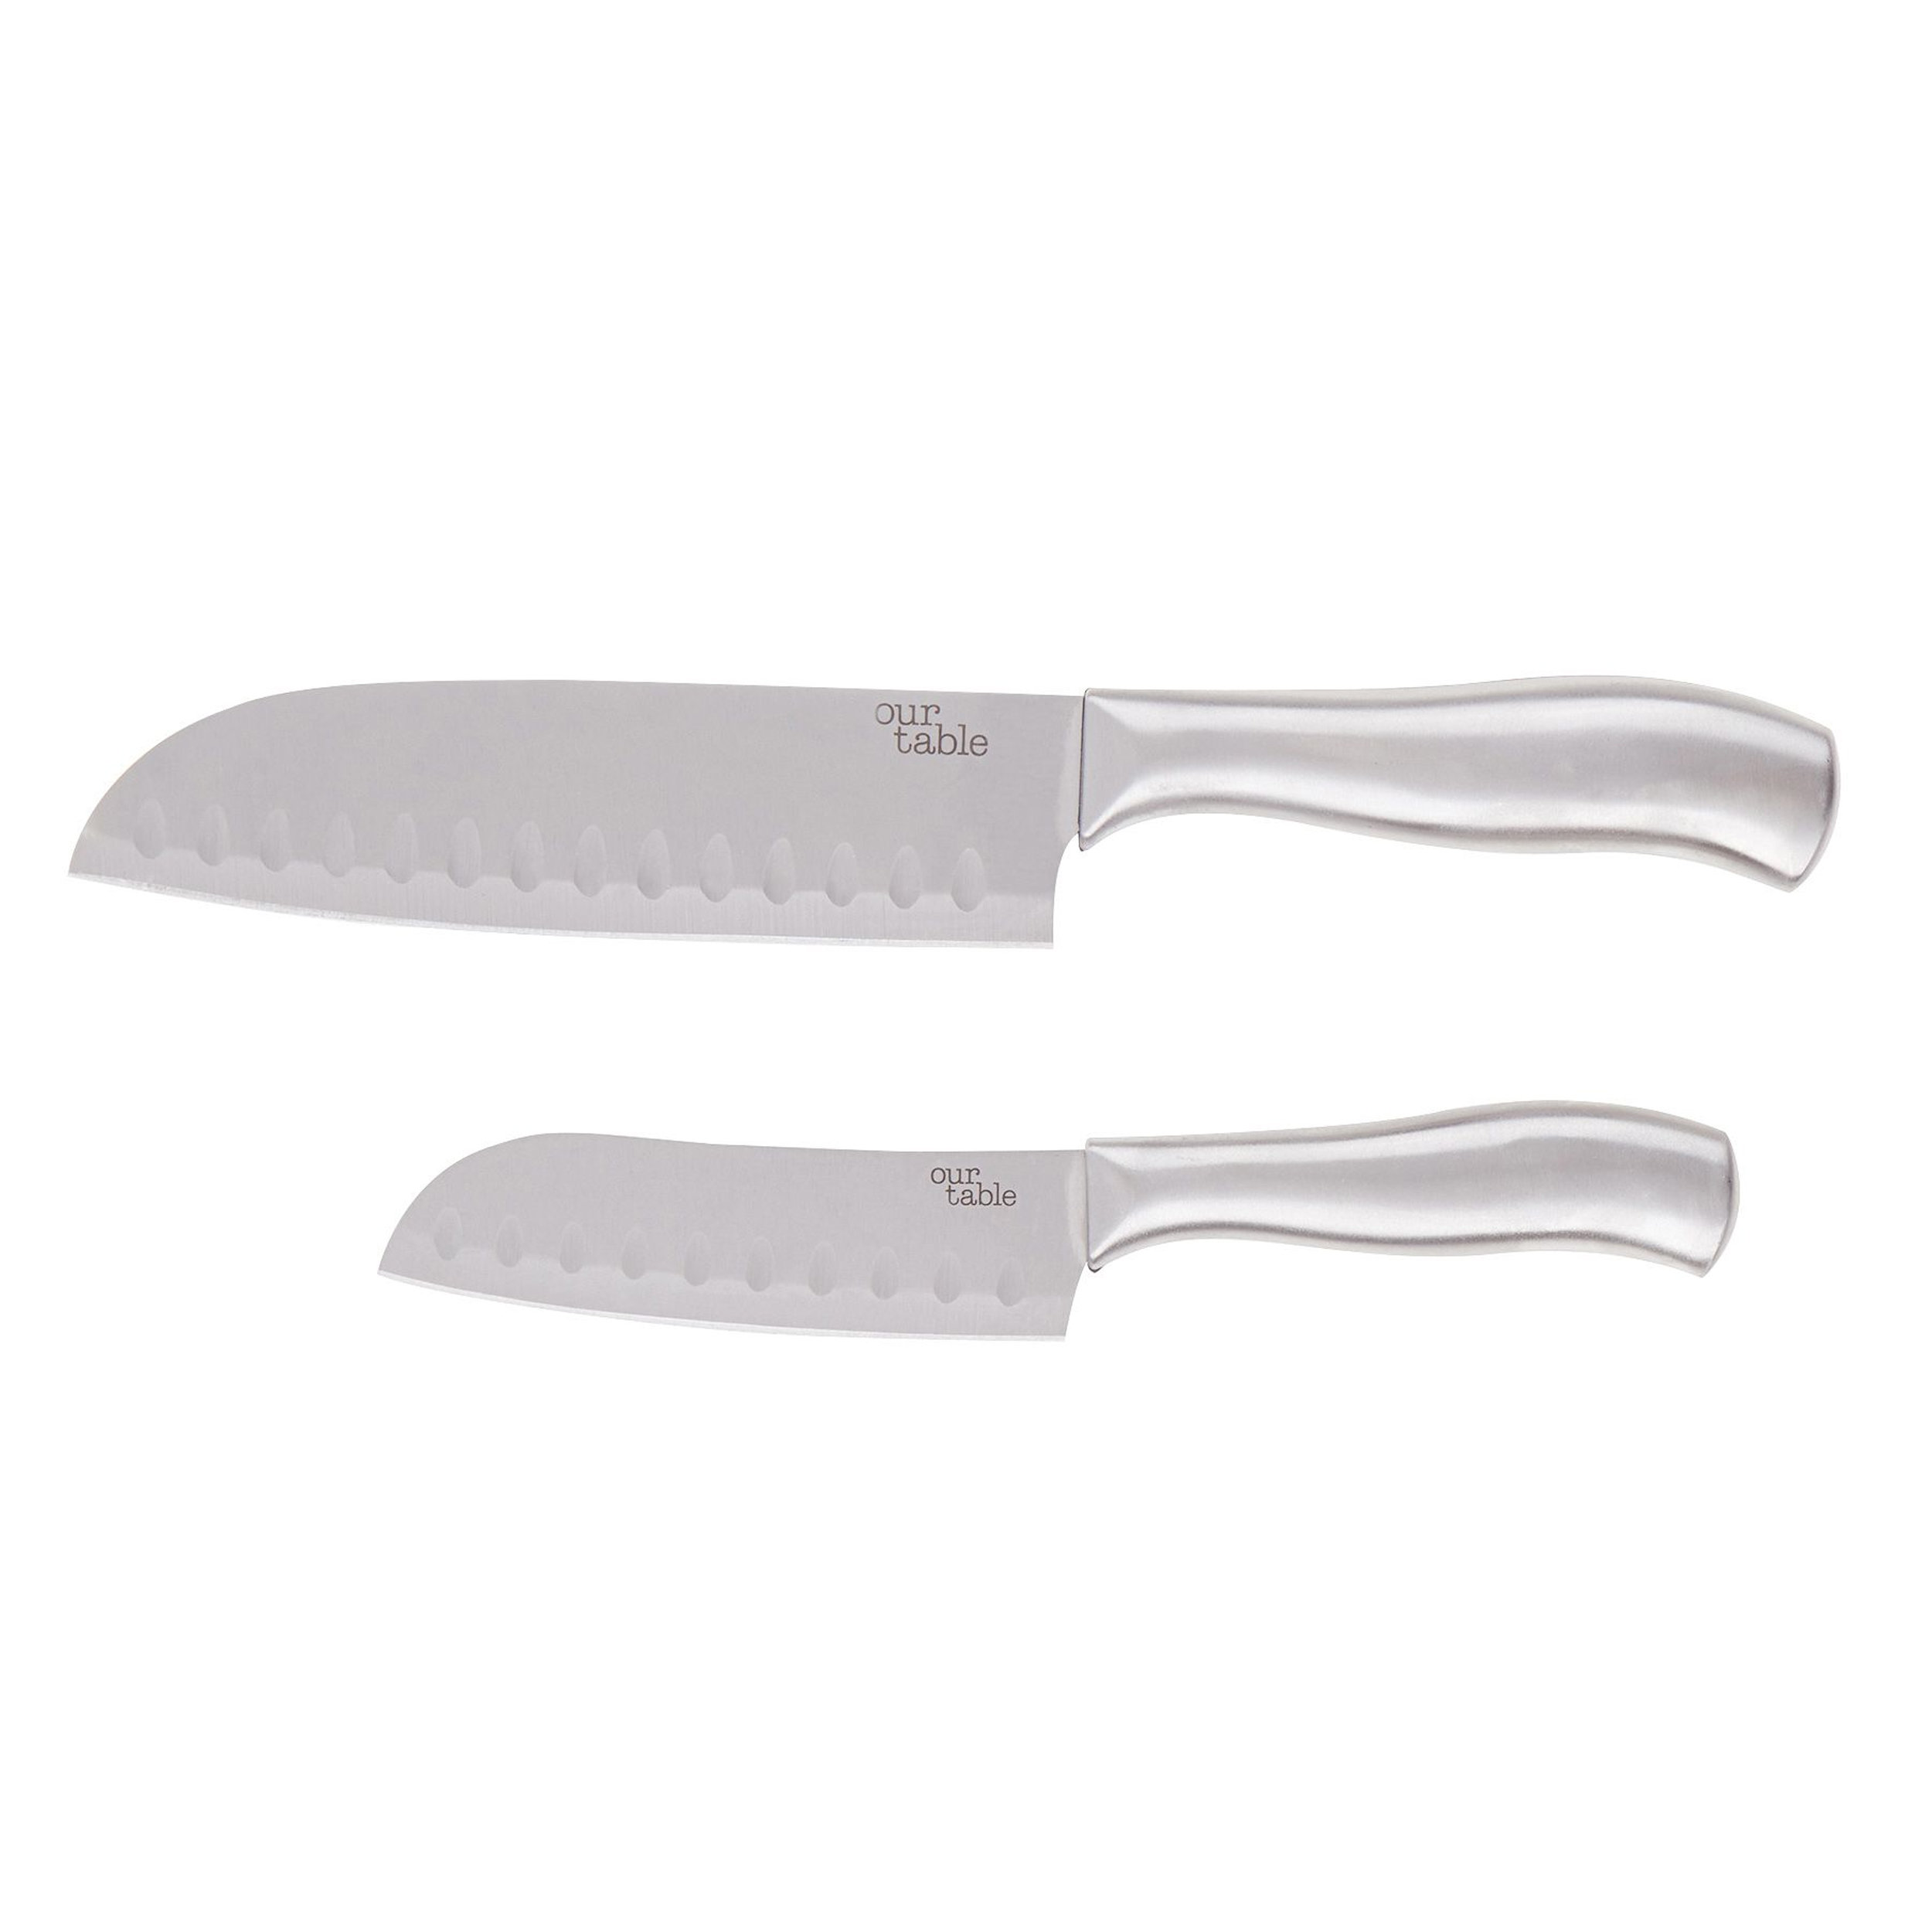 https://assets.wfcdn.com/im/88454290/compr-r85/2413/241395464/gibson-2-piece-stainless-steel-assorted-knife-set.jpg